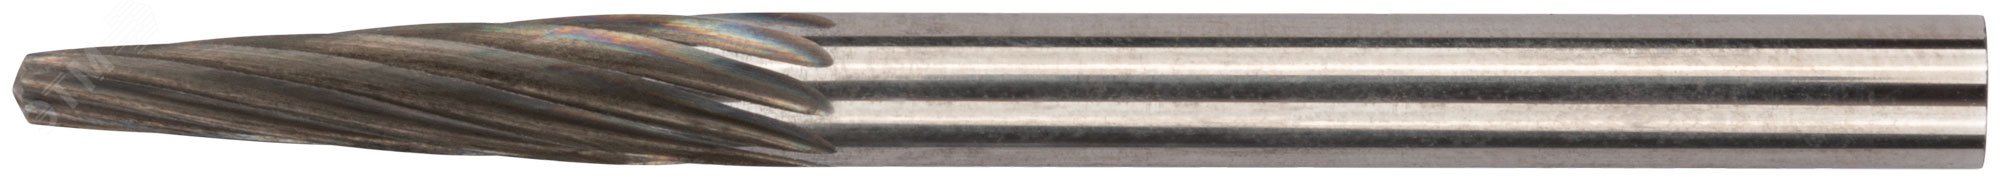 Шарошка карбидная Профи, штифт 3 мм (мини), коническая с закруглением 36585 FIT - превью